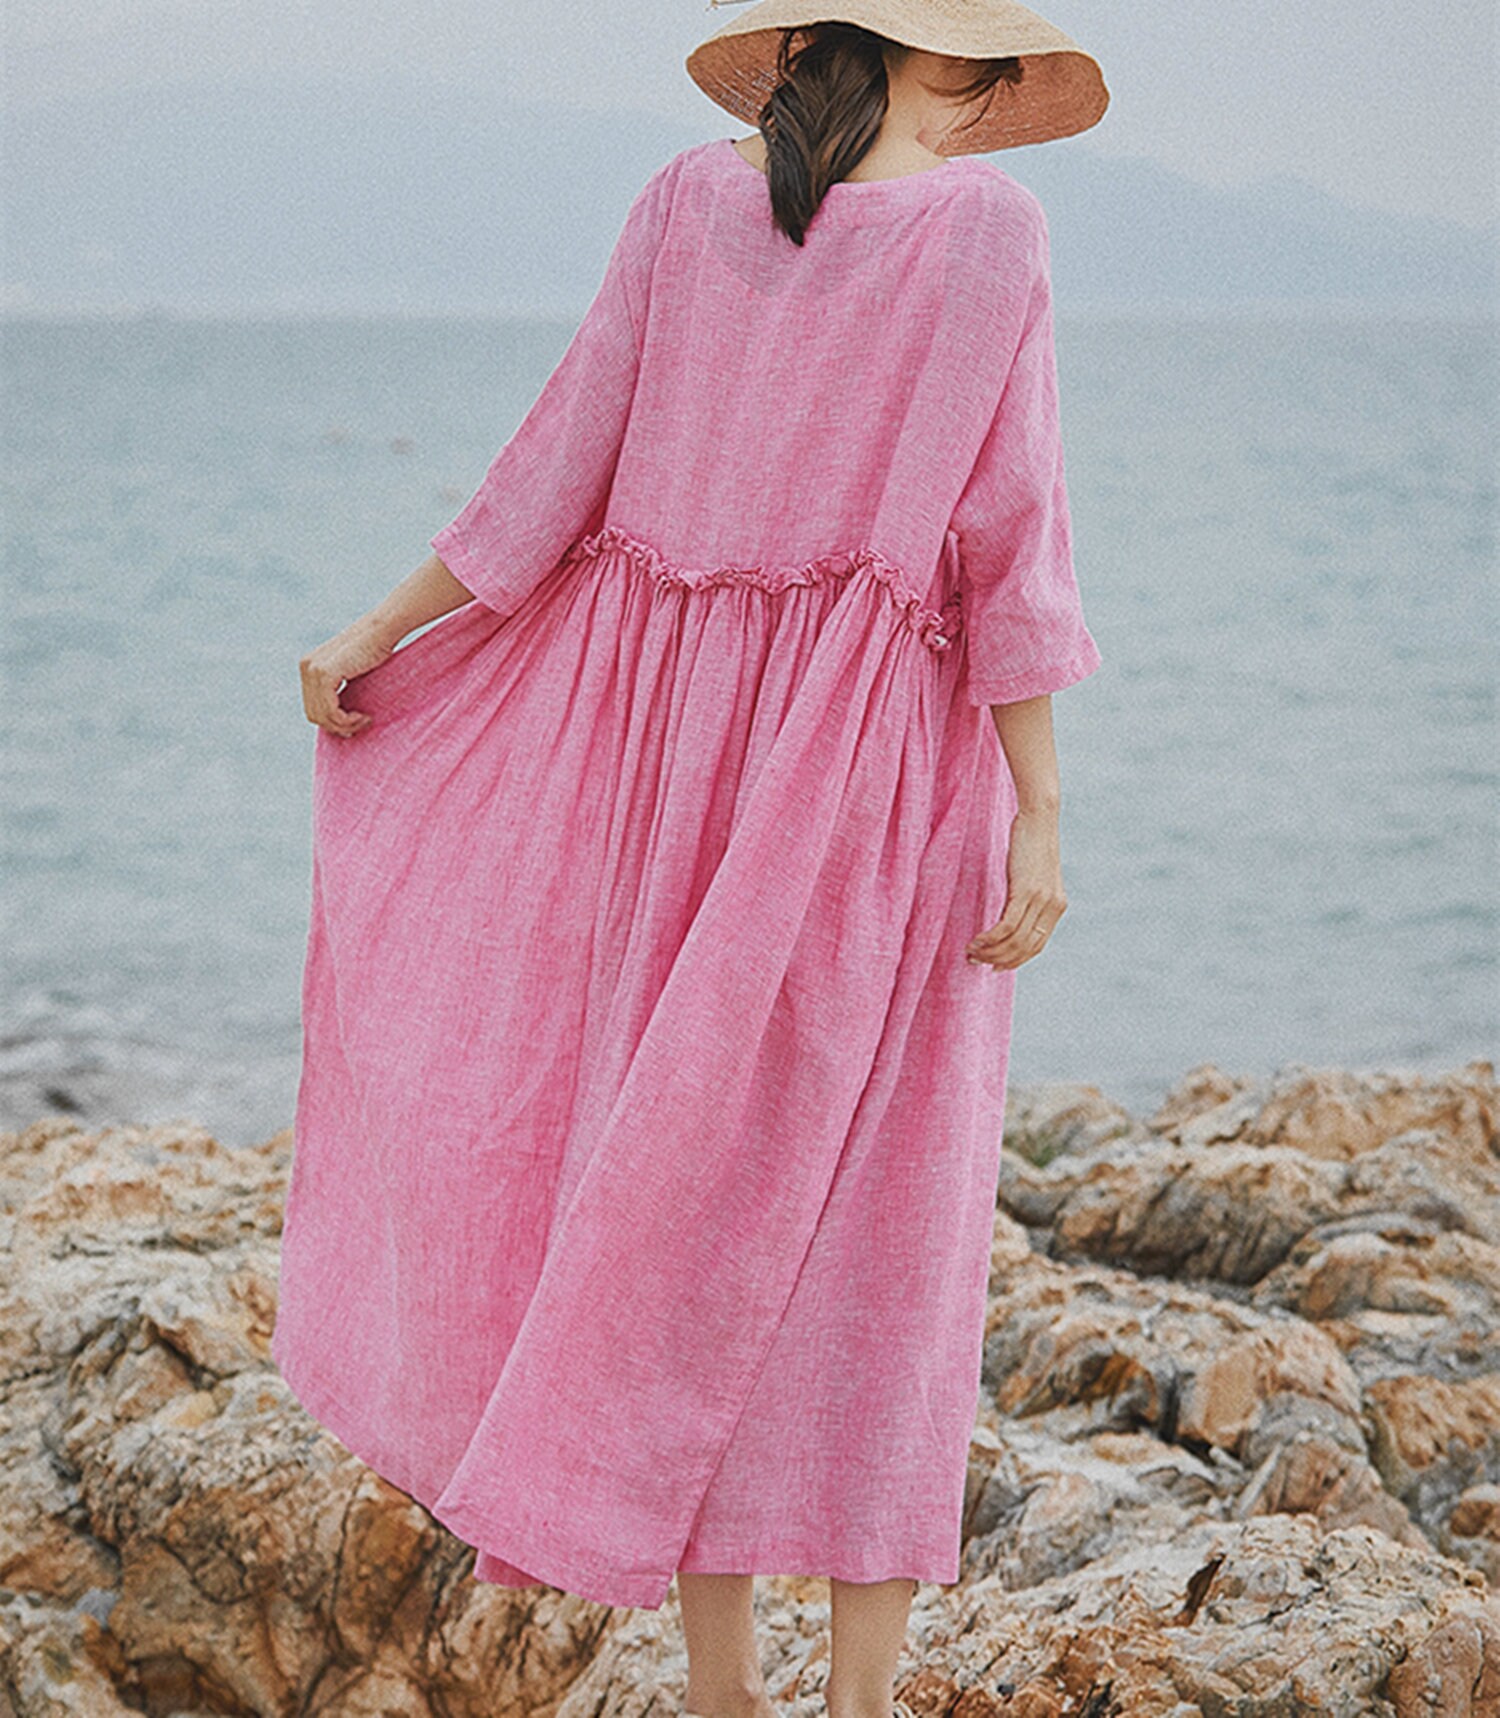 Pink linen dresscausal dresssummer beach dresslinen tunic | Etsy